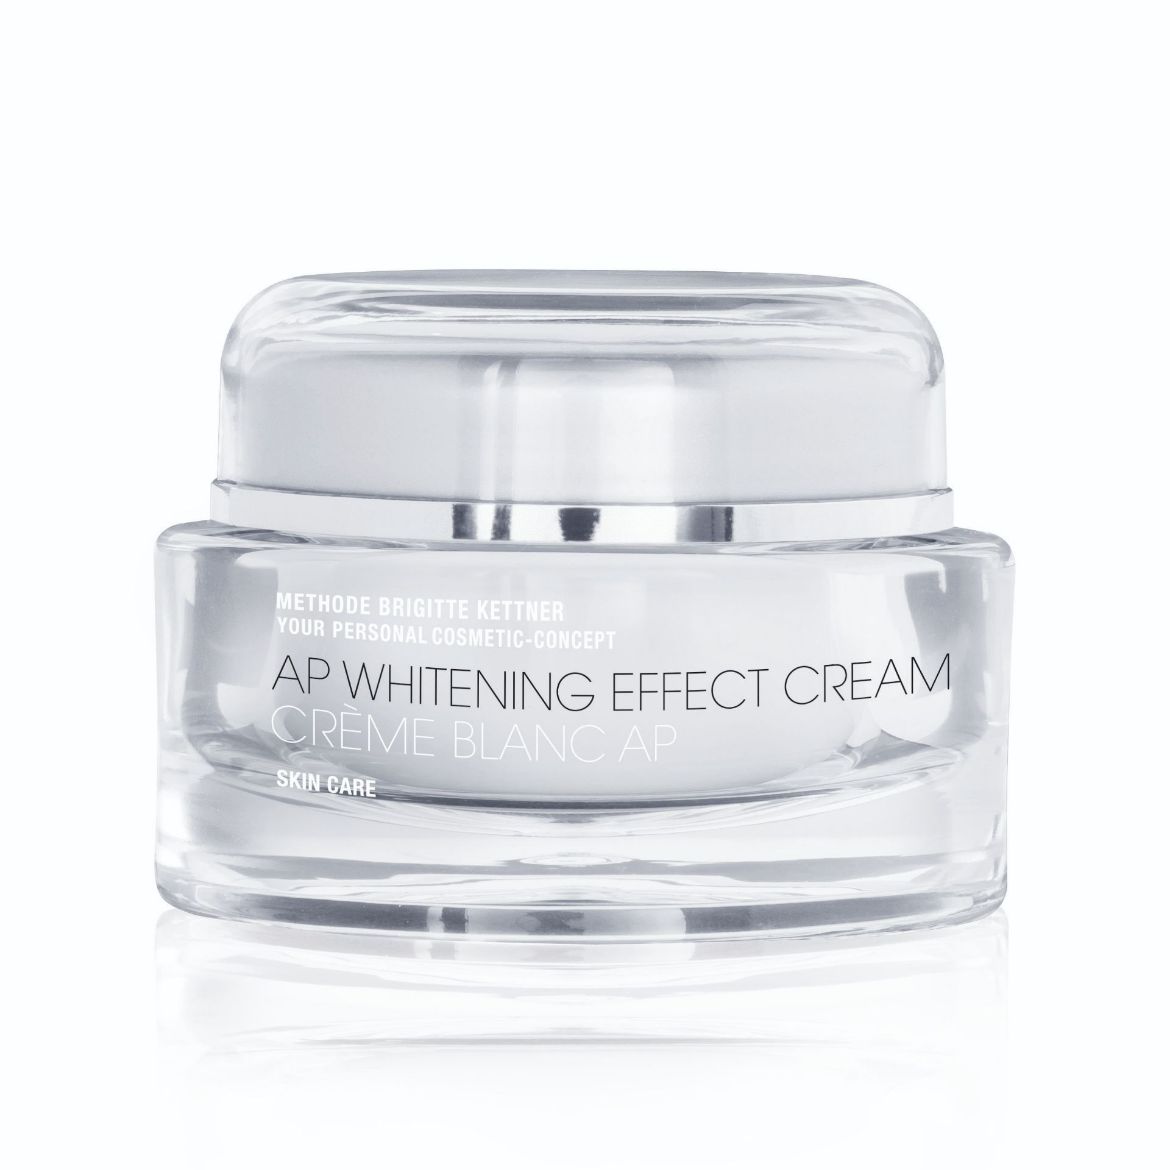 Image of Methode Brigitte Kettner AP Whitening Effect Cream (30ml)